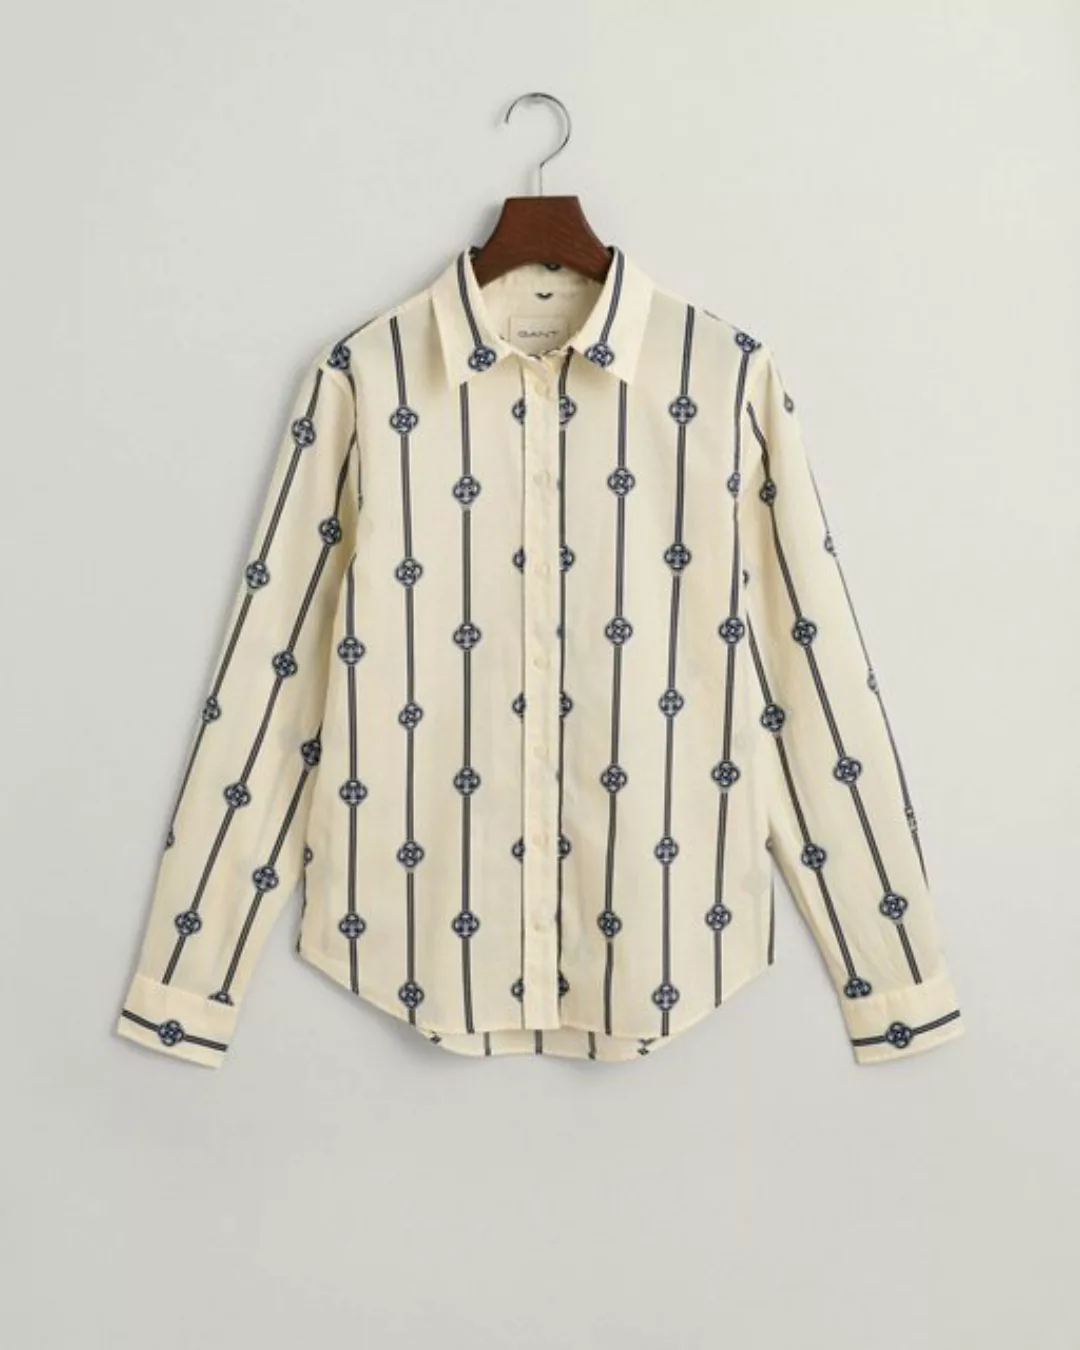 Gant Longsweatshirt günstig online kaufen